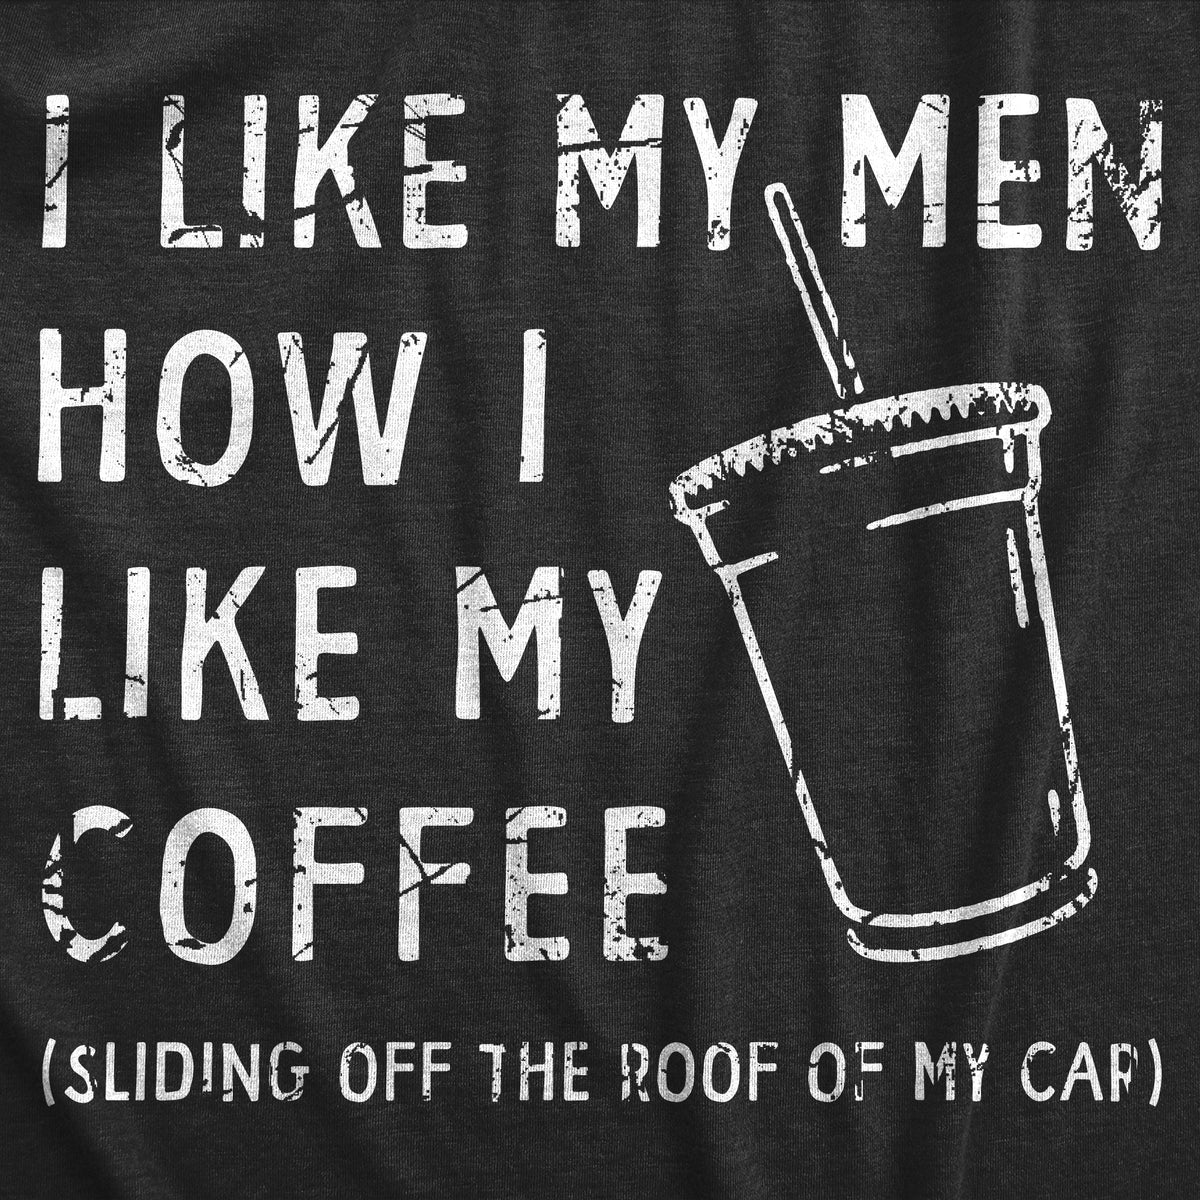 I Like My Coffee The Same Way I Like My Men Coffee Mugs